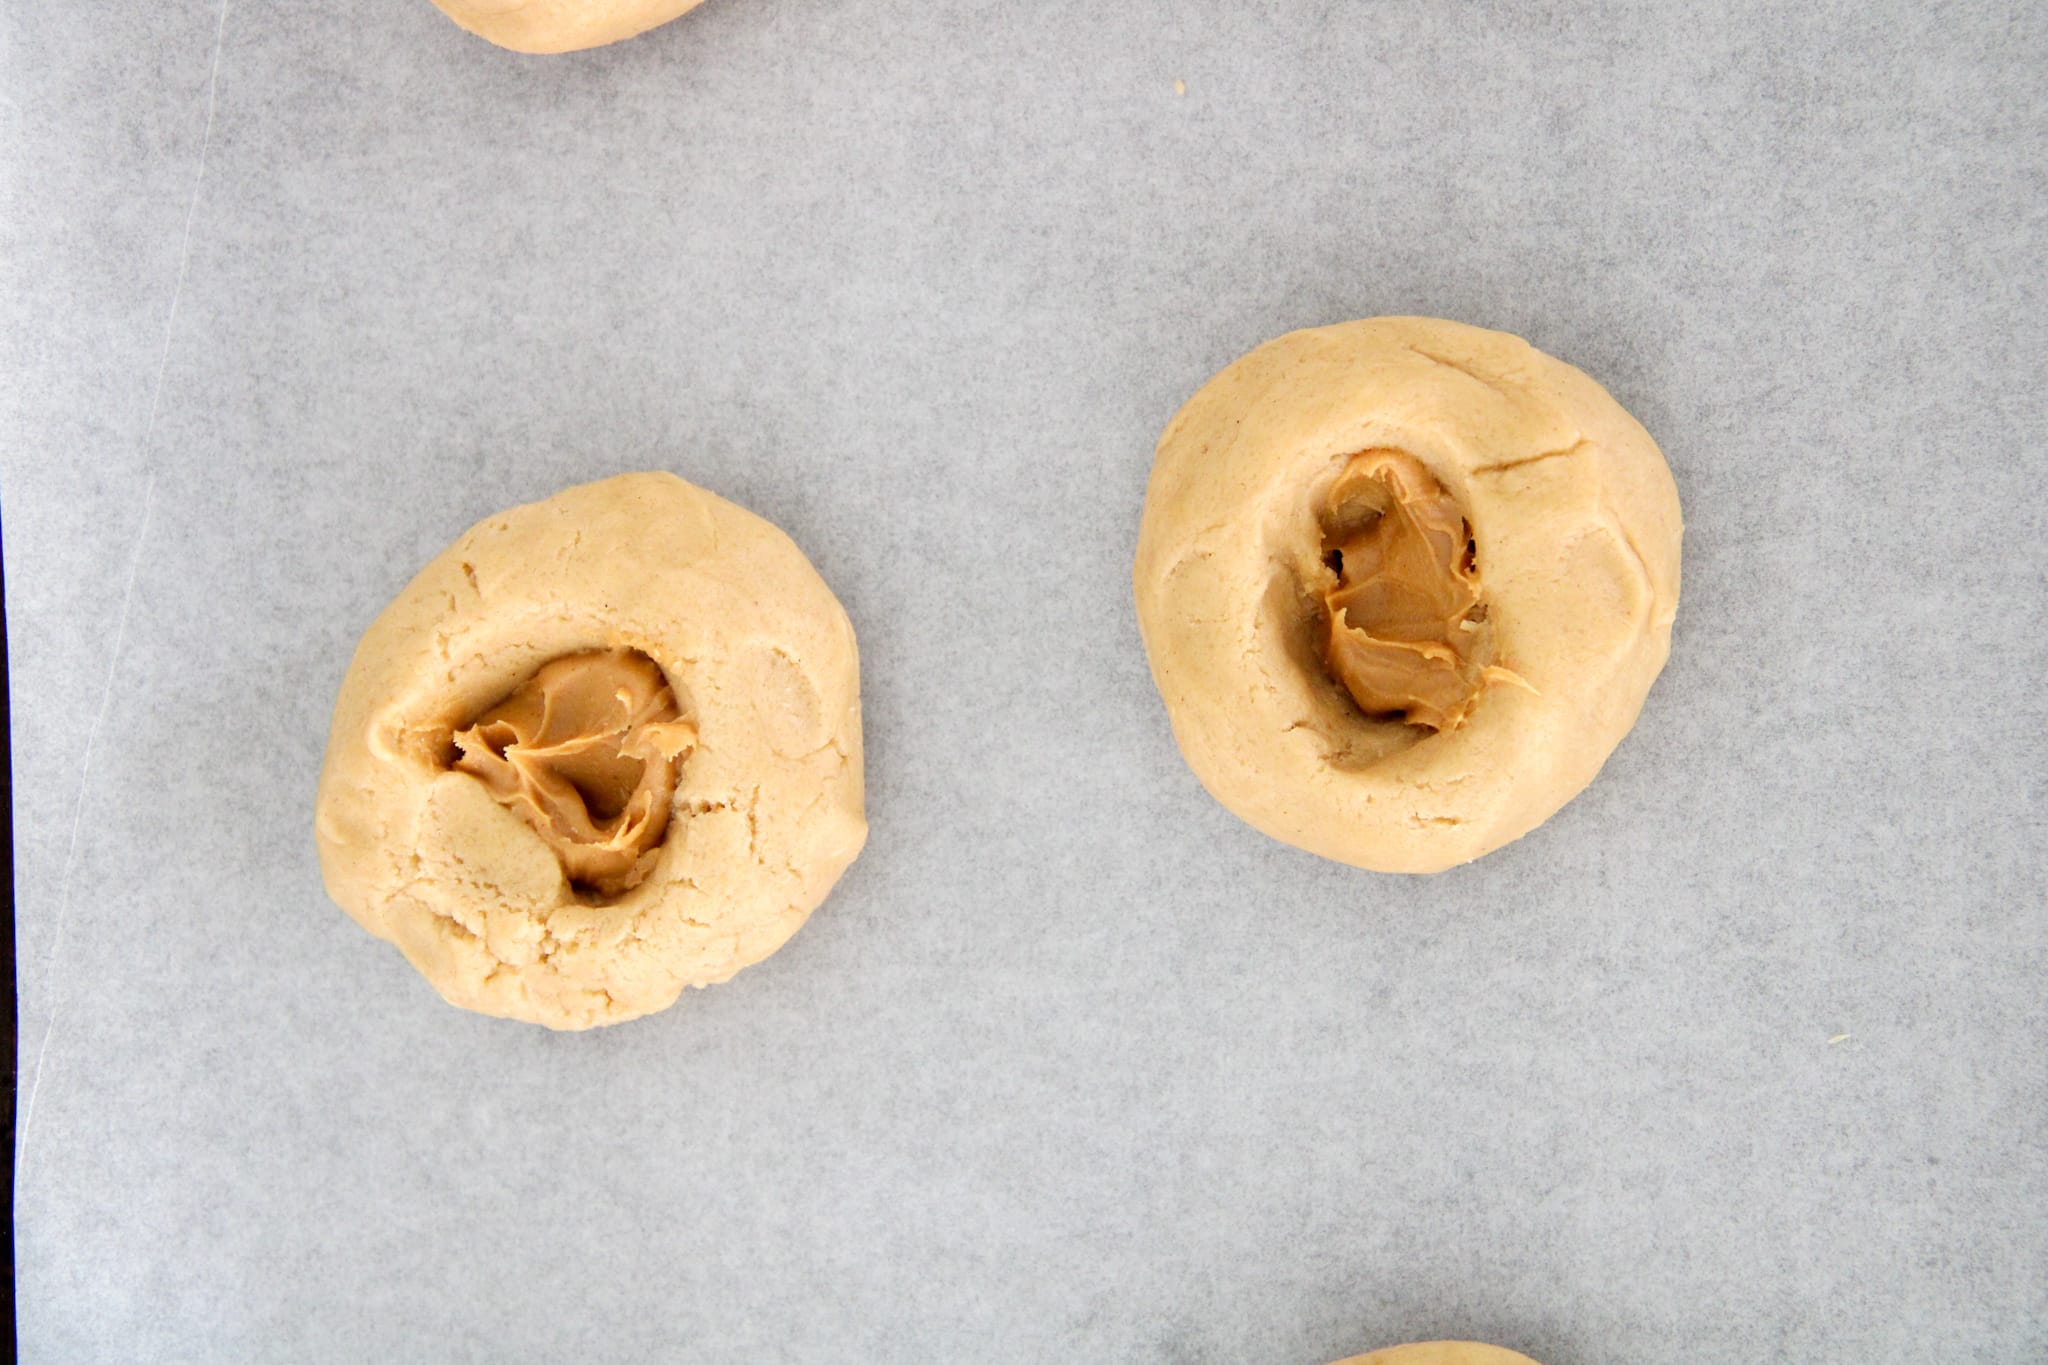 Putting Peanut Butter inside dough